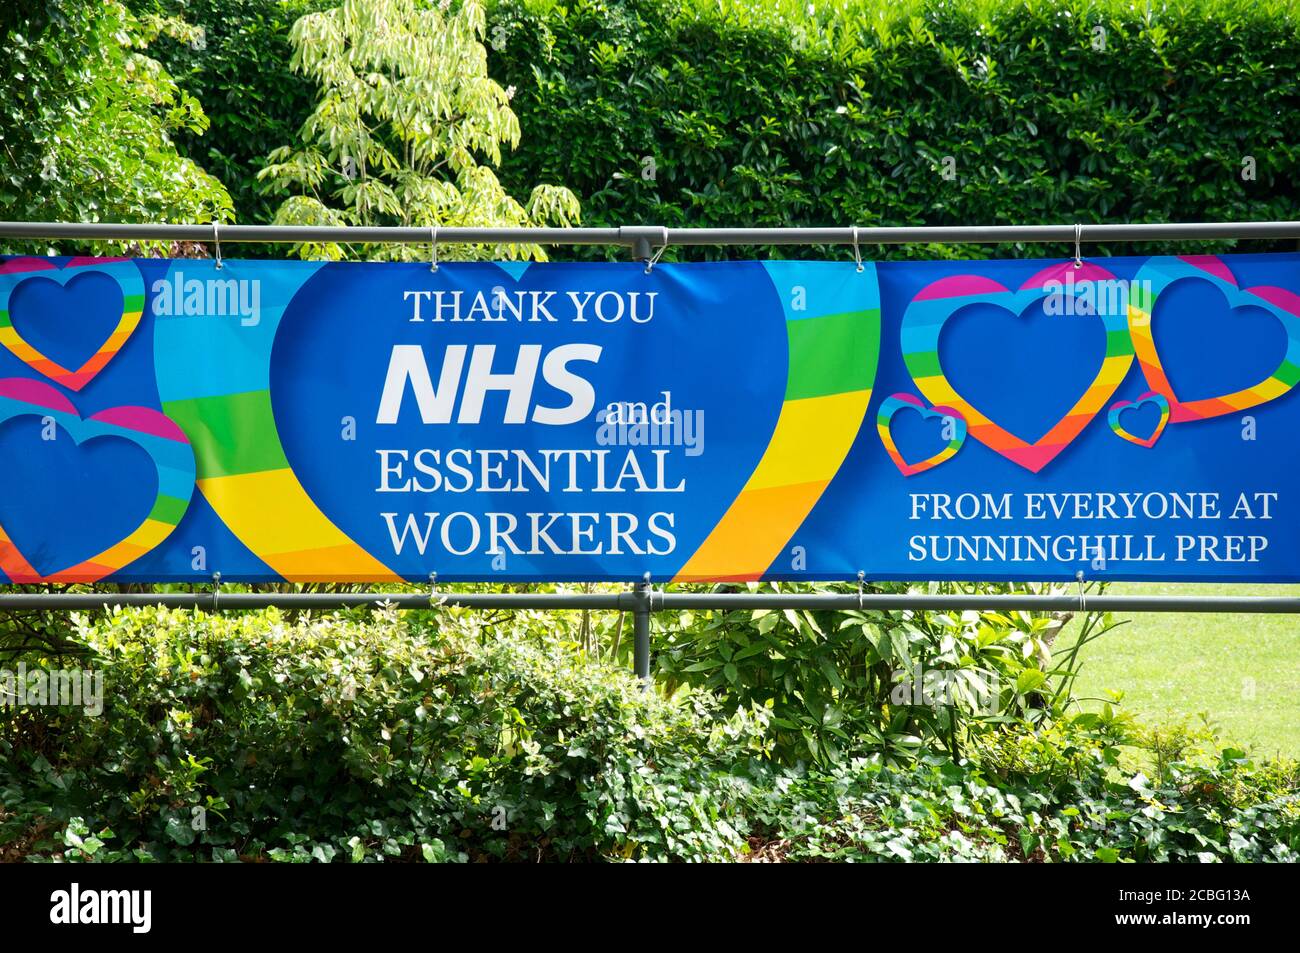 Bannière exprimant sa gratitude au NHS et aux travailleurs essentiels qui servent la communauté pendant le confinement dû à l'urgence pandémique Covid 19. Angleterre. Banque D'Images